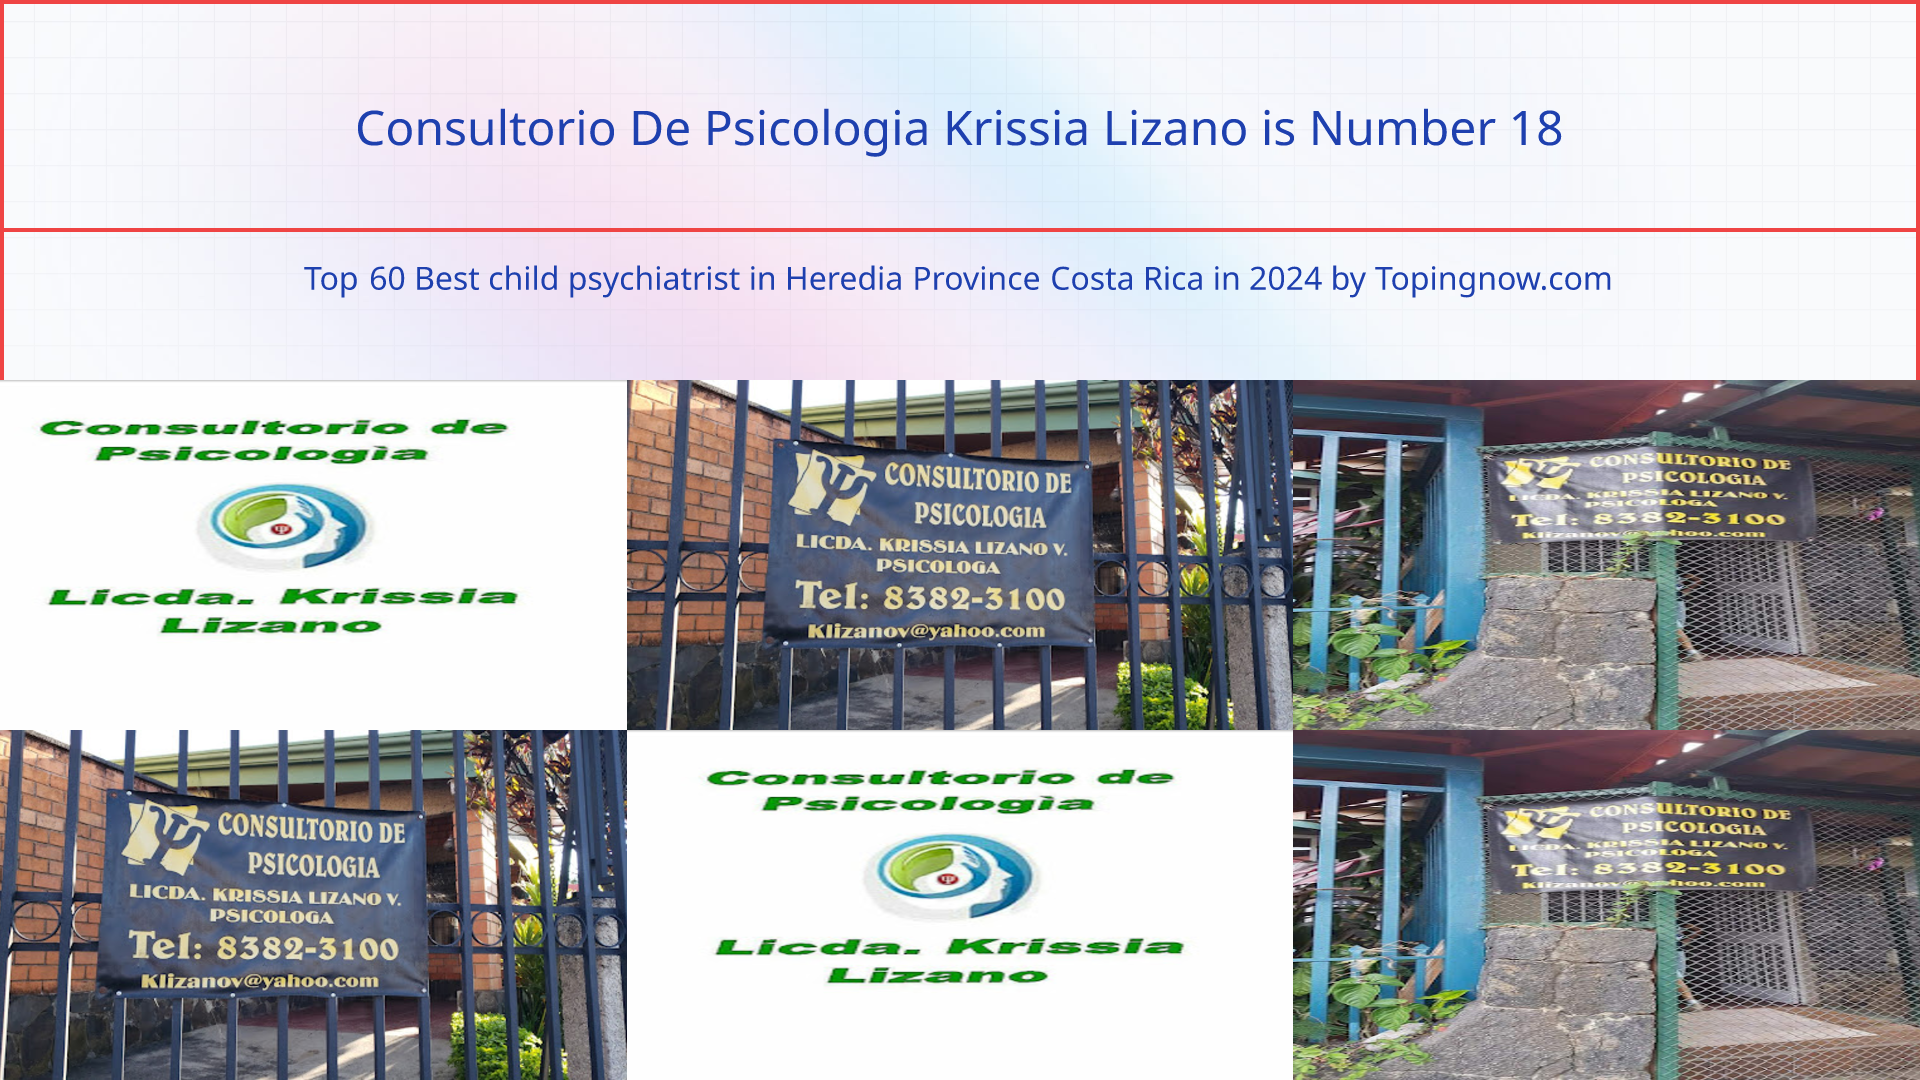 Consultorio De Psicologia Krissia Lizano: Top 60 Best child psychiatrist in Heredia Province Costa Rica in 2024